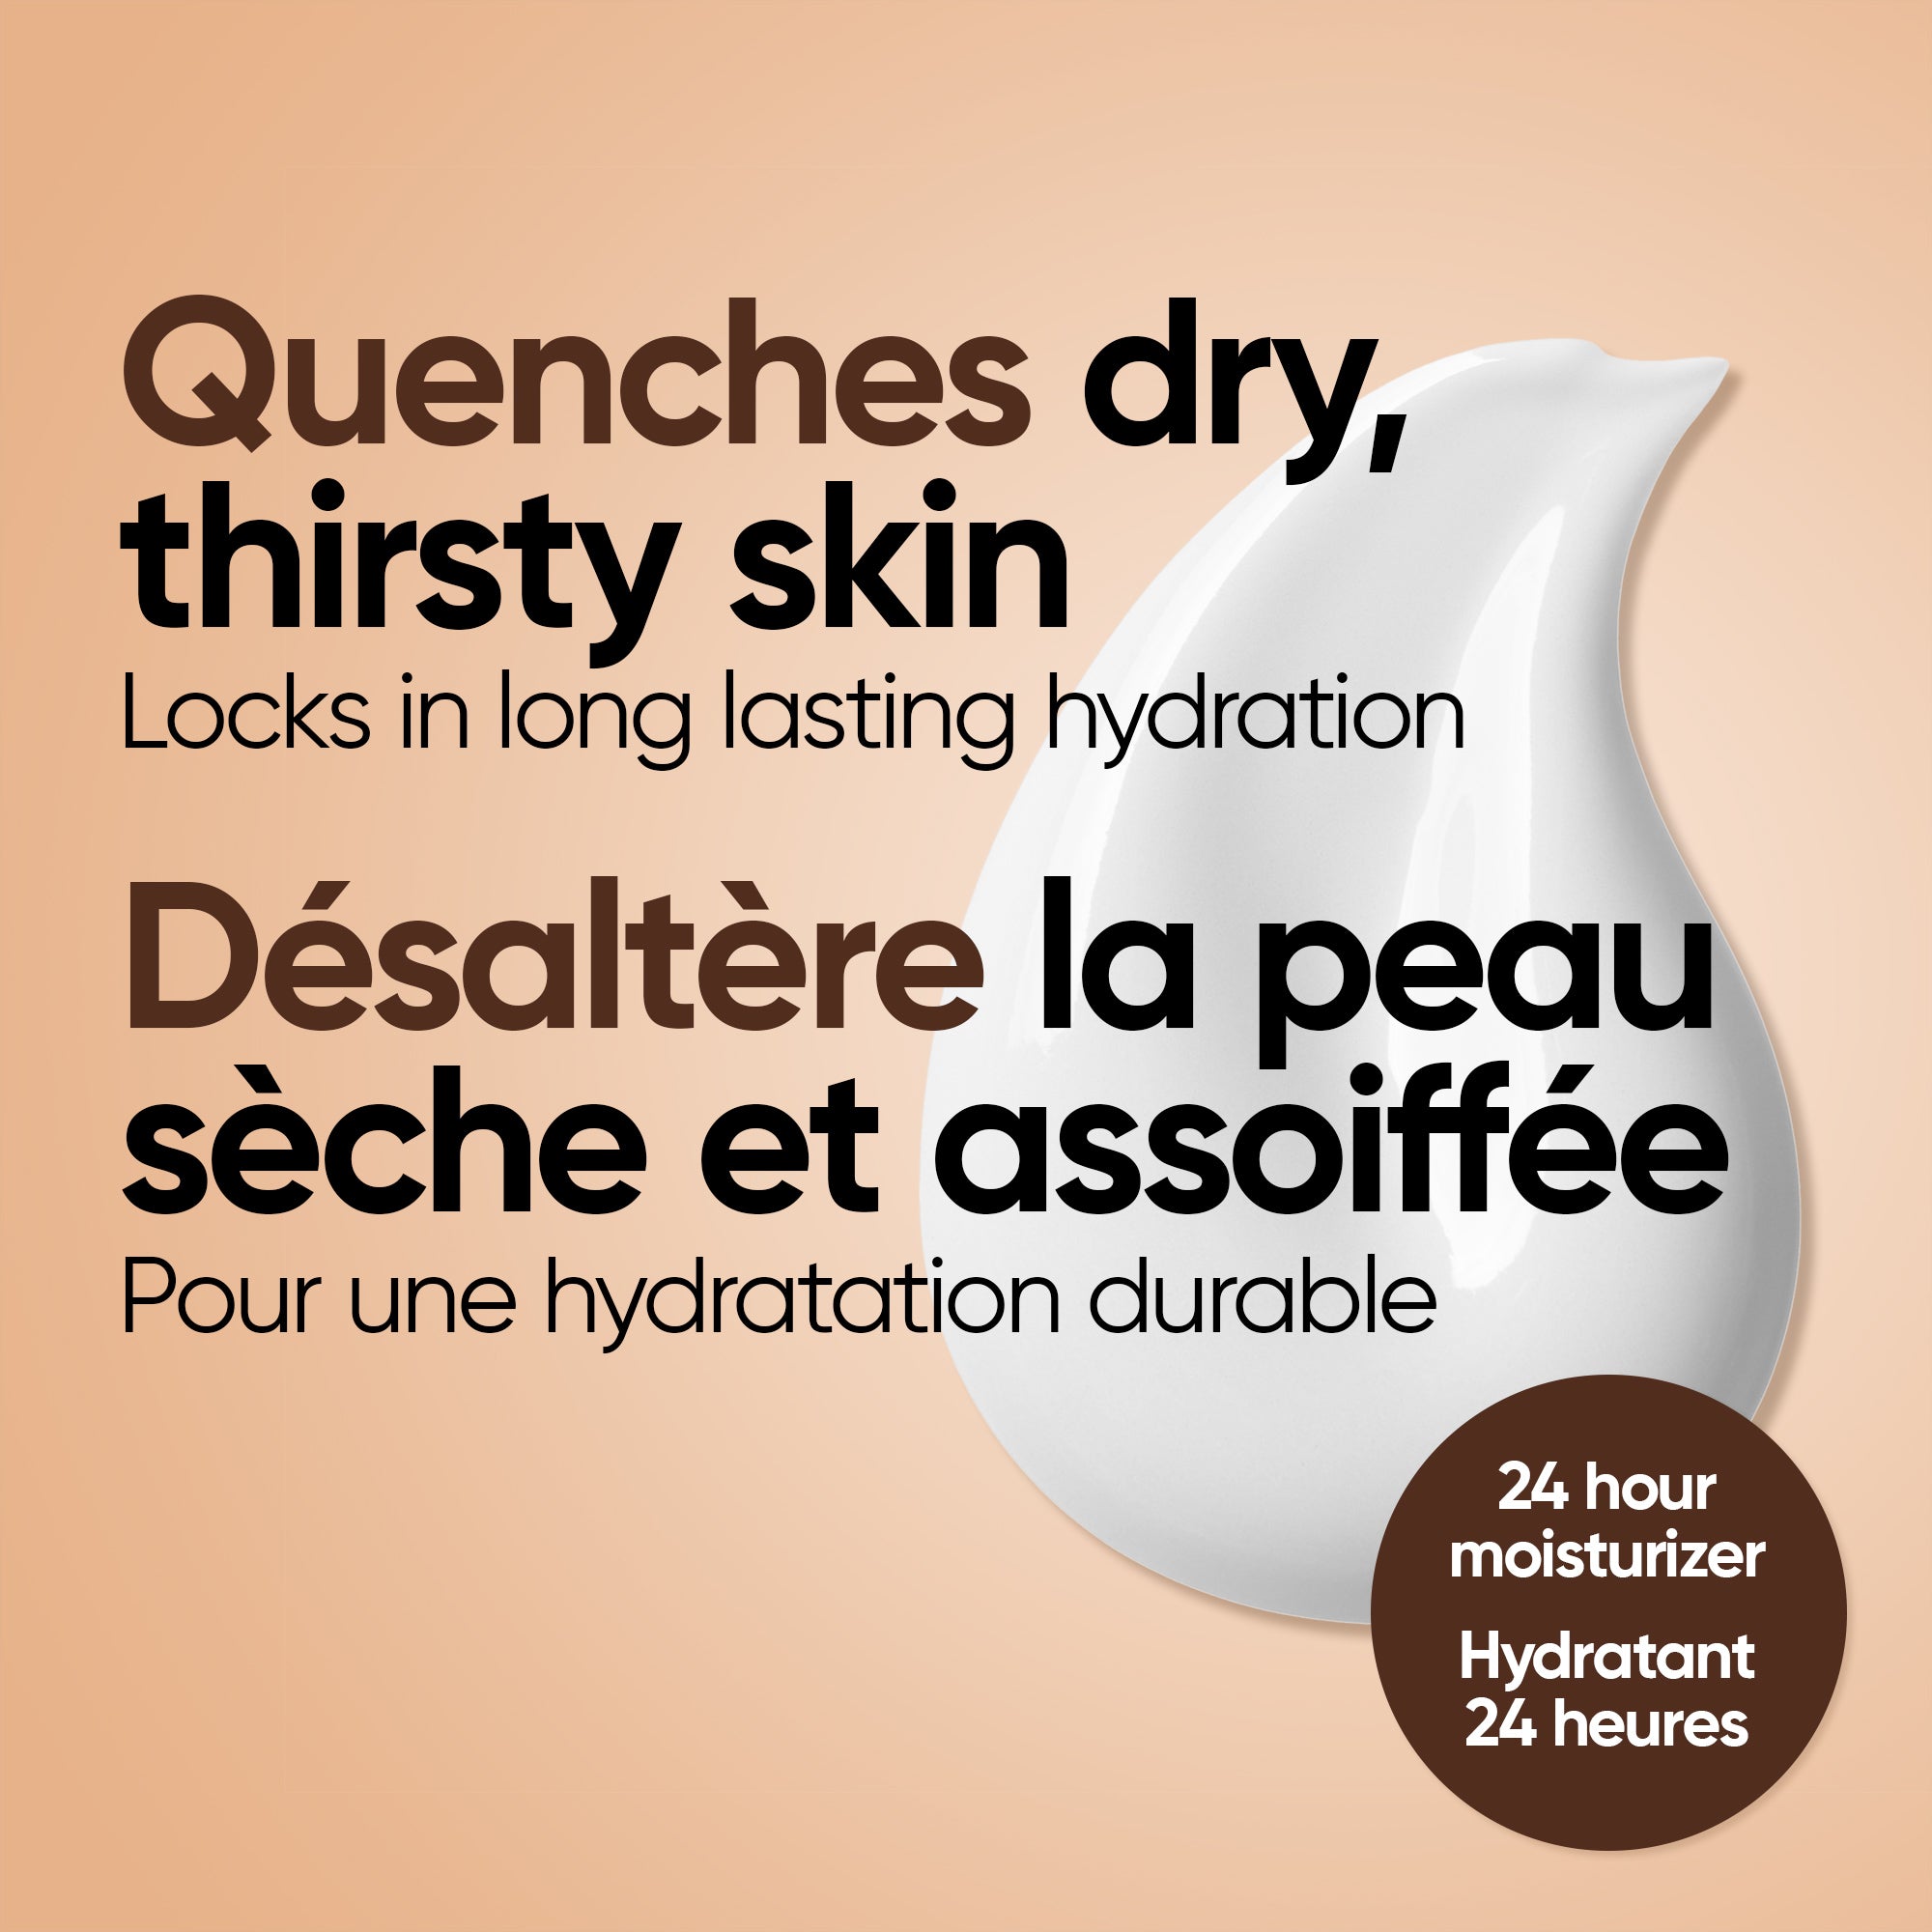 English: Quenches dry, thirsty skin locks in long lasting hydration Français: Apaise la peau sèche déshydratée et confère une hydratation longue durée